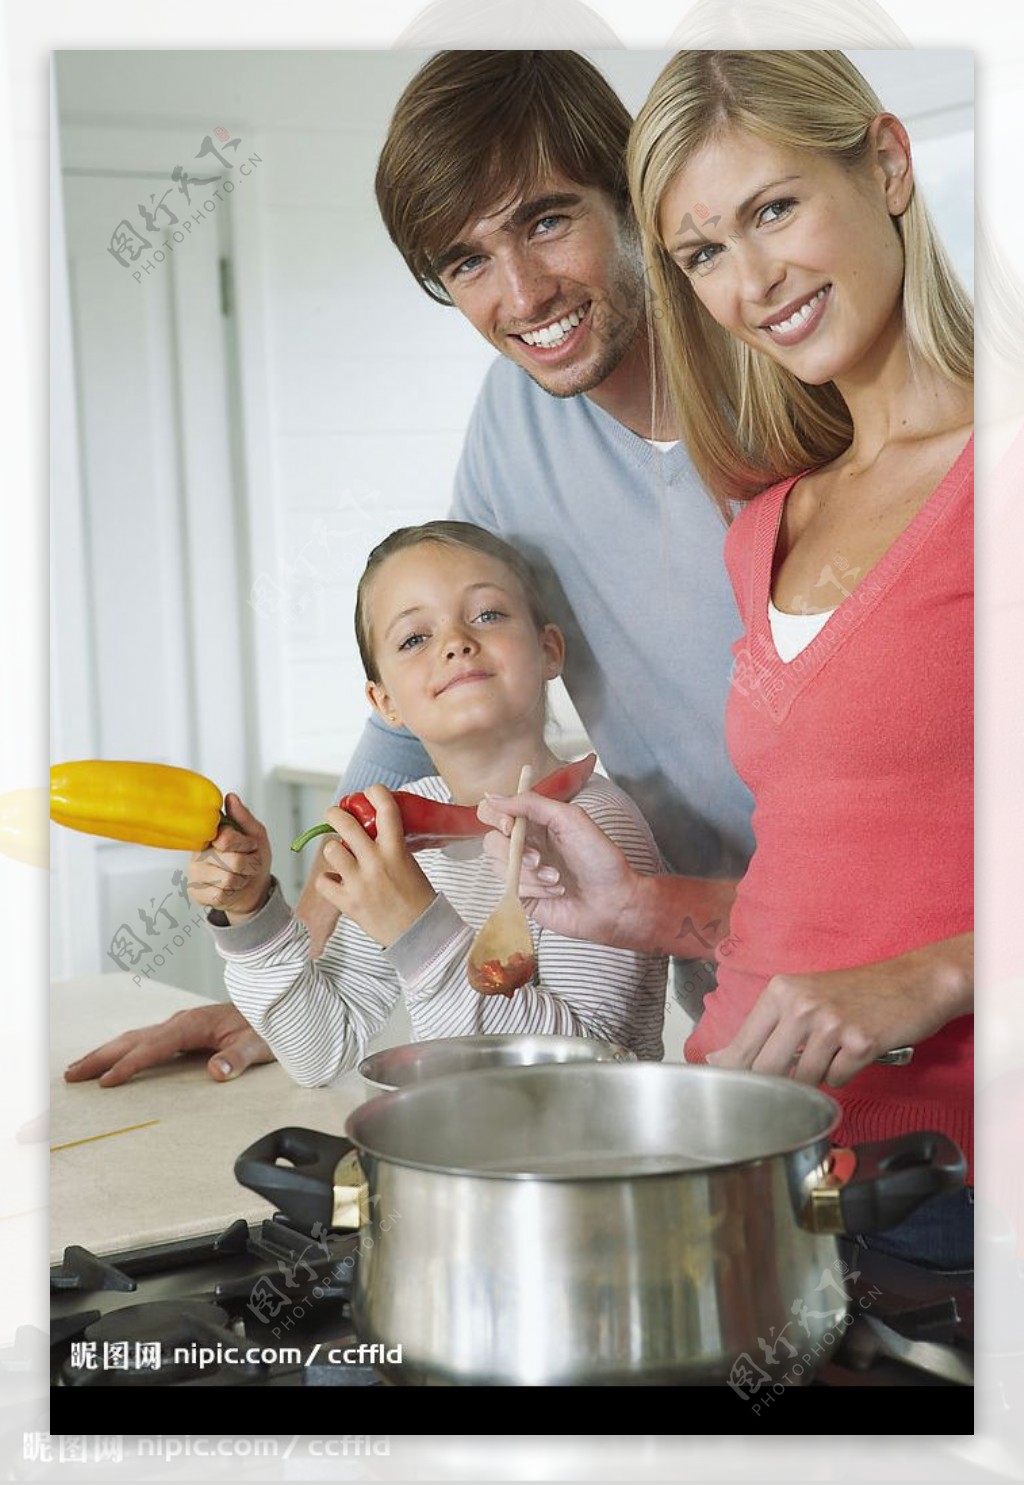 一家人煮食图片